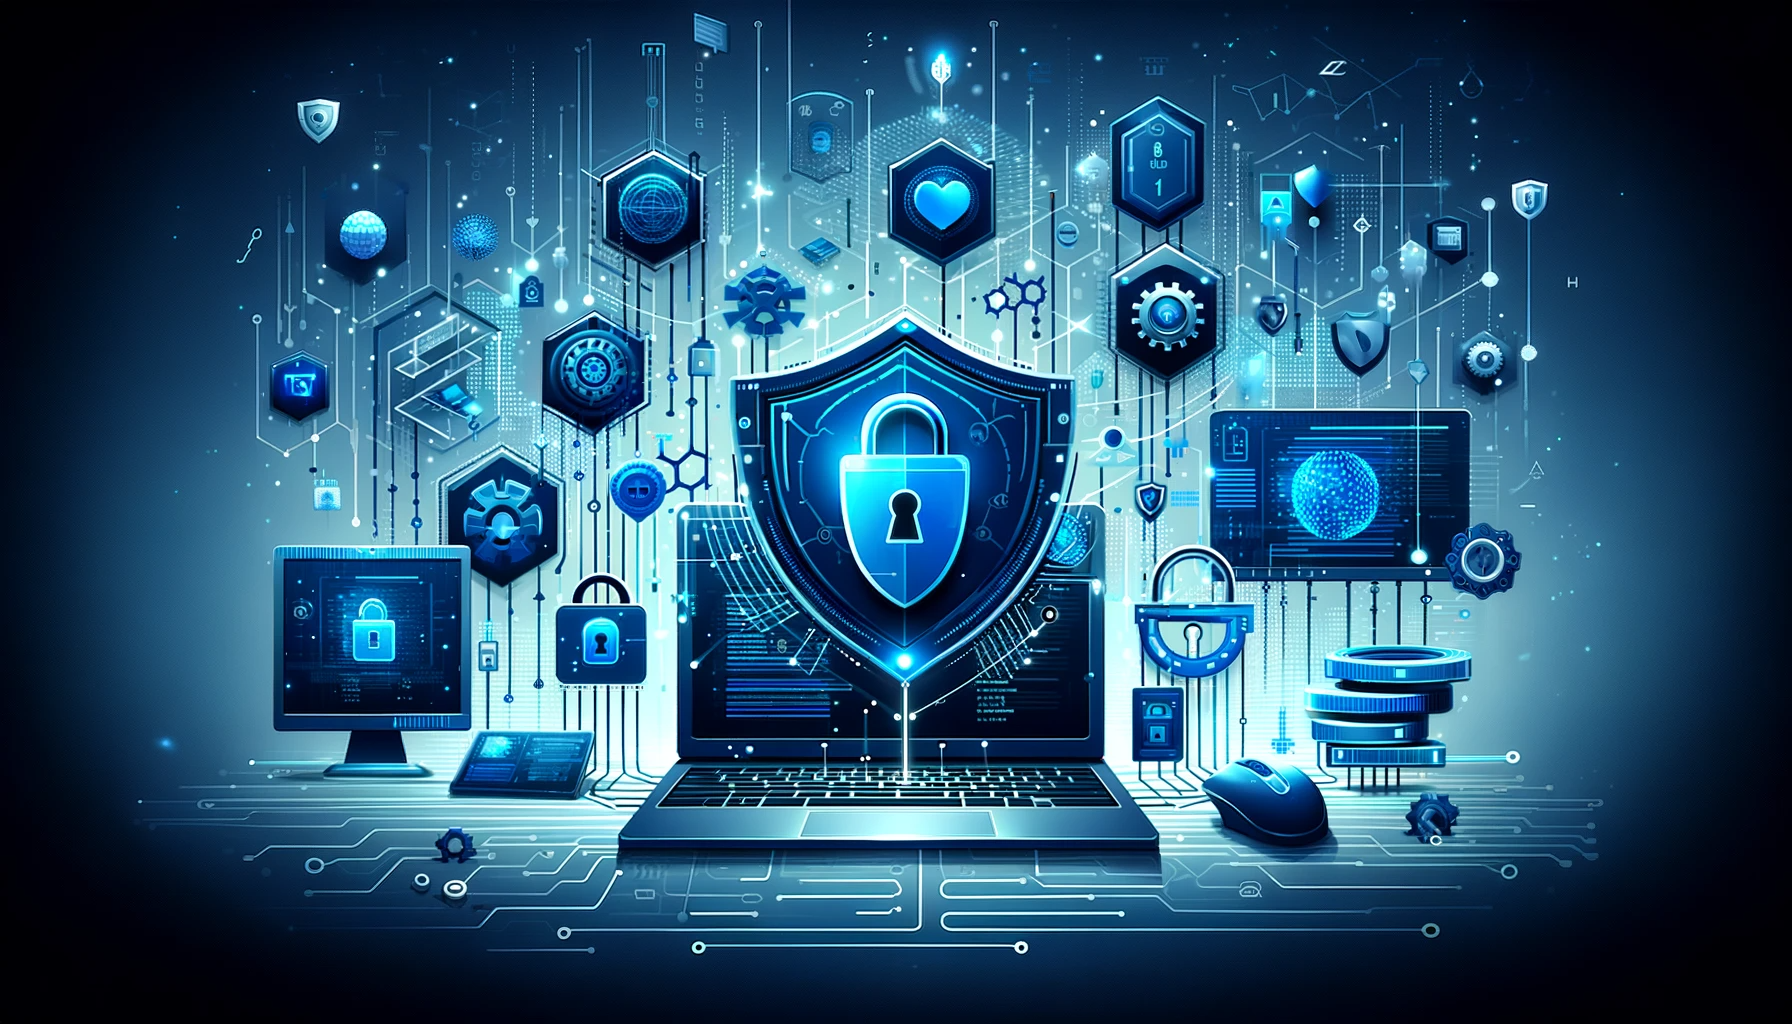 Illustration représentant la cybersécurité avec des pare-feu, des systèmes de sécurisation de réseau, des cadenas numériques, et des flux de données, dans des teintes froides de bleu et de gris.